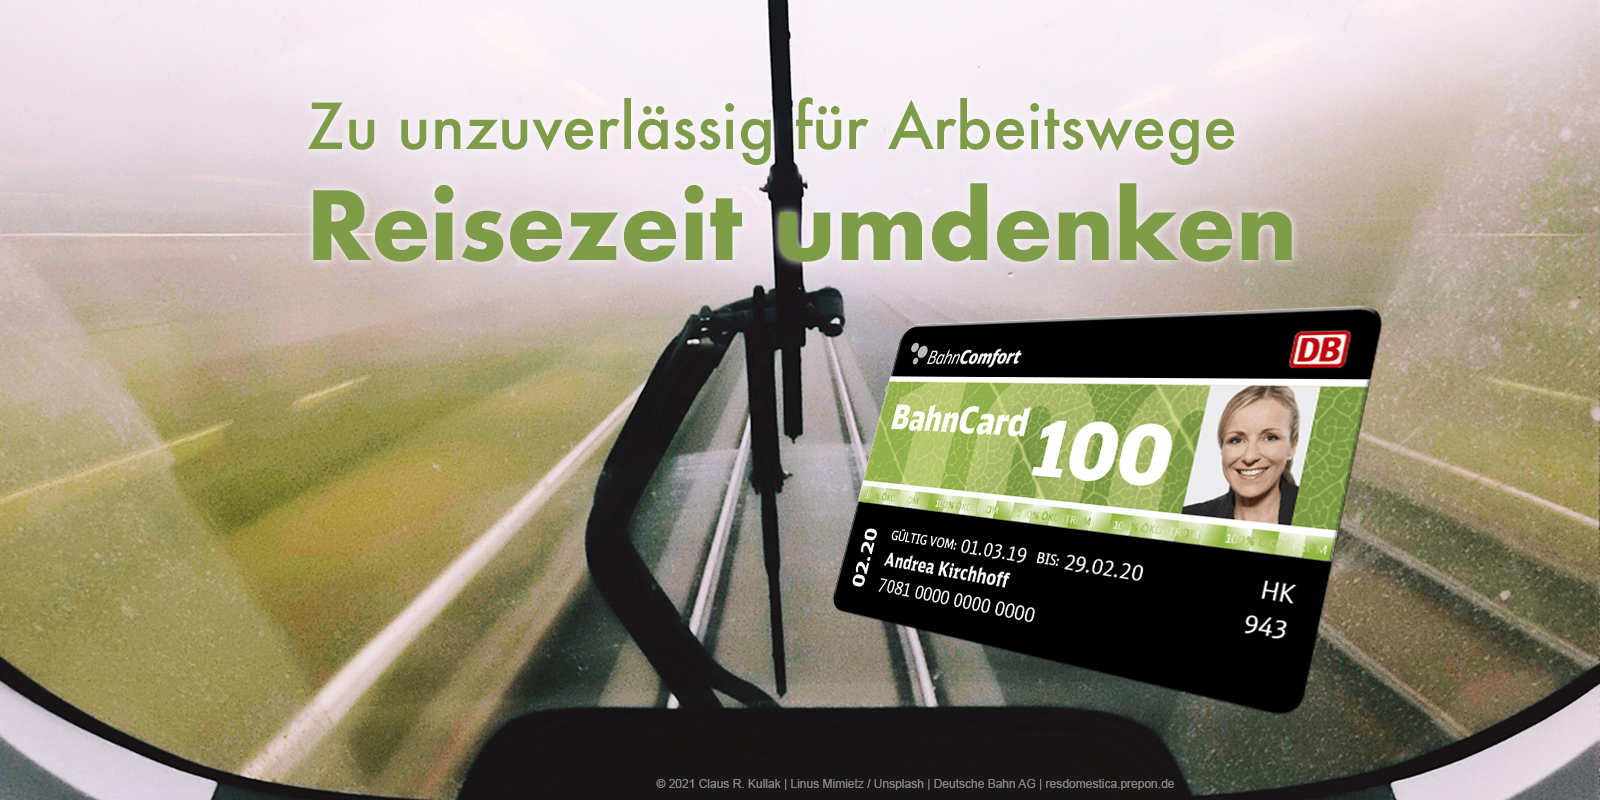 Bahn zu unzuverlässig? | © 2021 Claus R. Kullak | Linus Mimietz / Unsplash | Deutsche Bahn AG | resdomestica.prepon.de